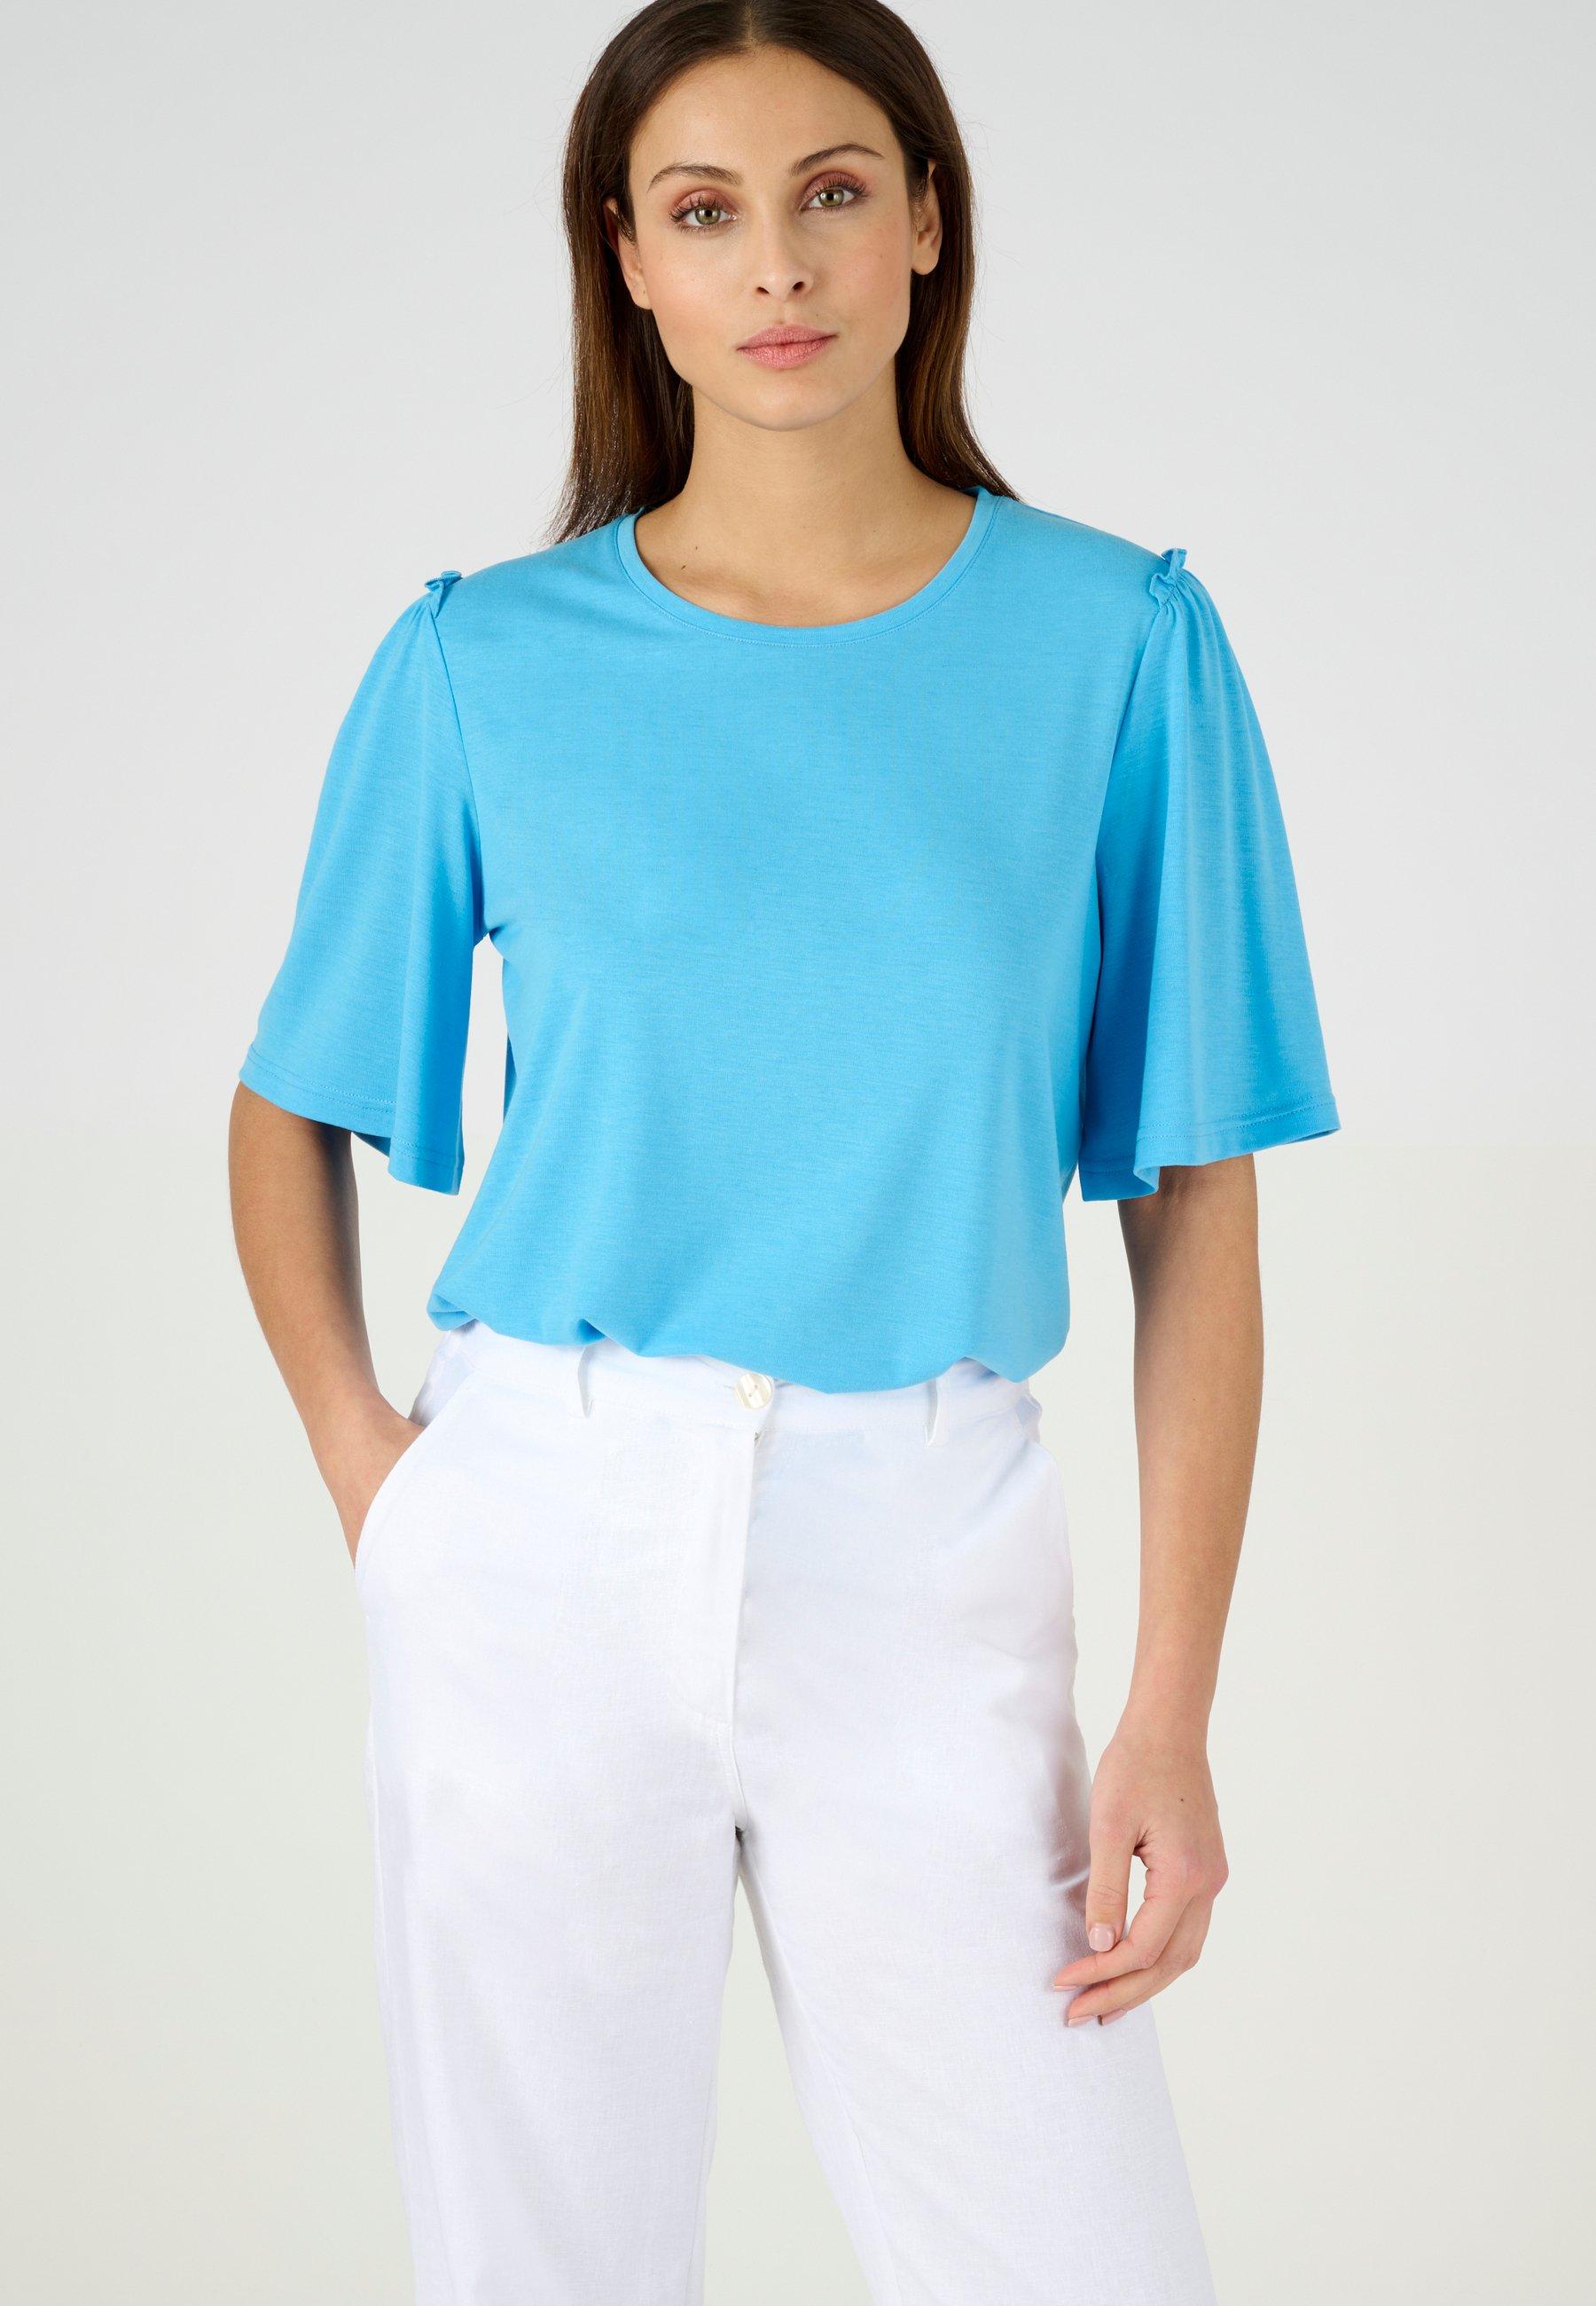 Climatyl-t-shirt. Damen Blau 38/40 von Damart